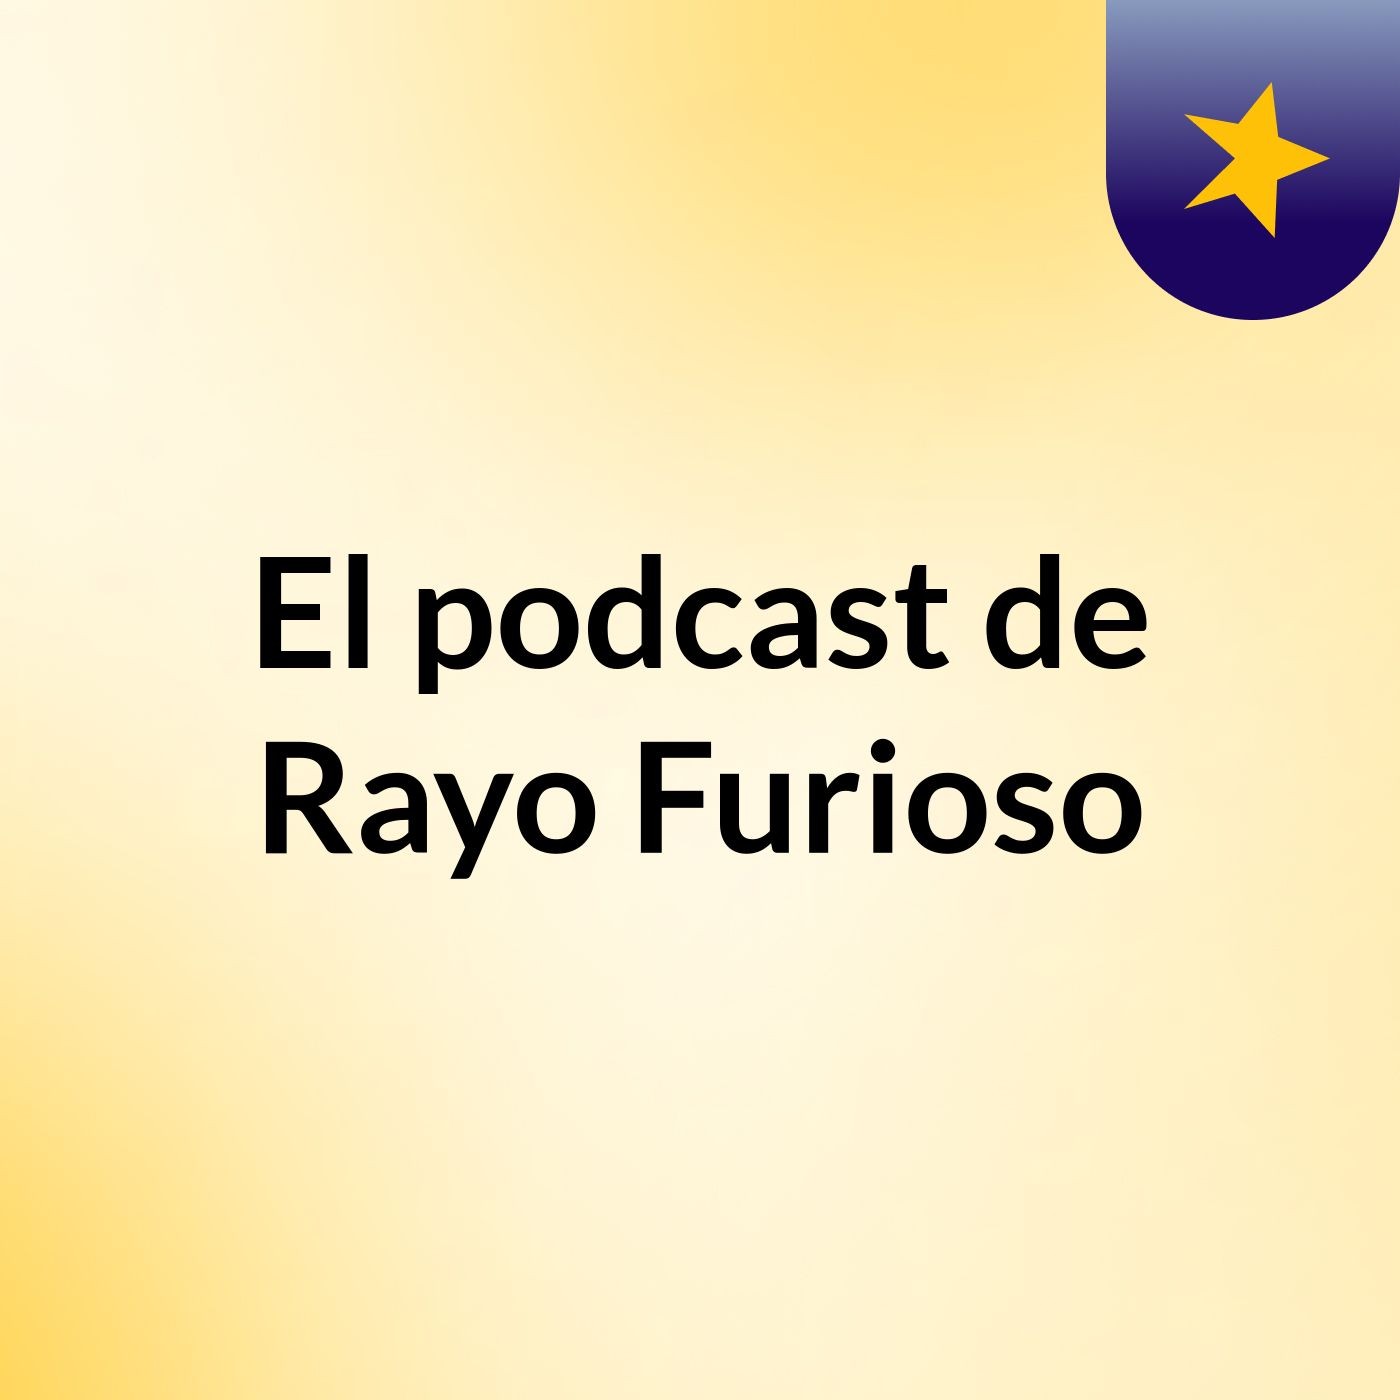 El podcast de Rayo Furioso